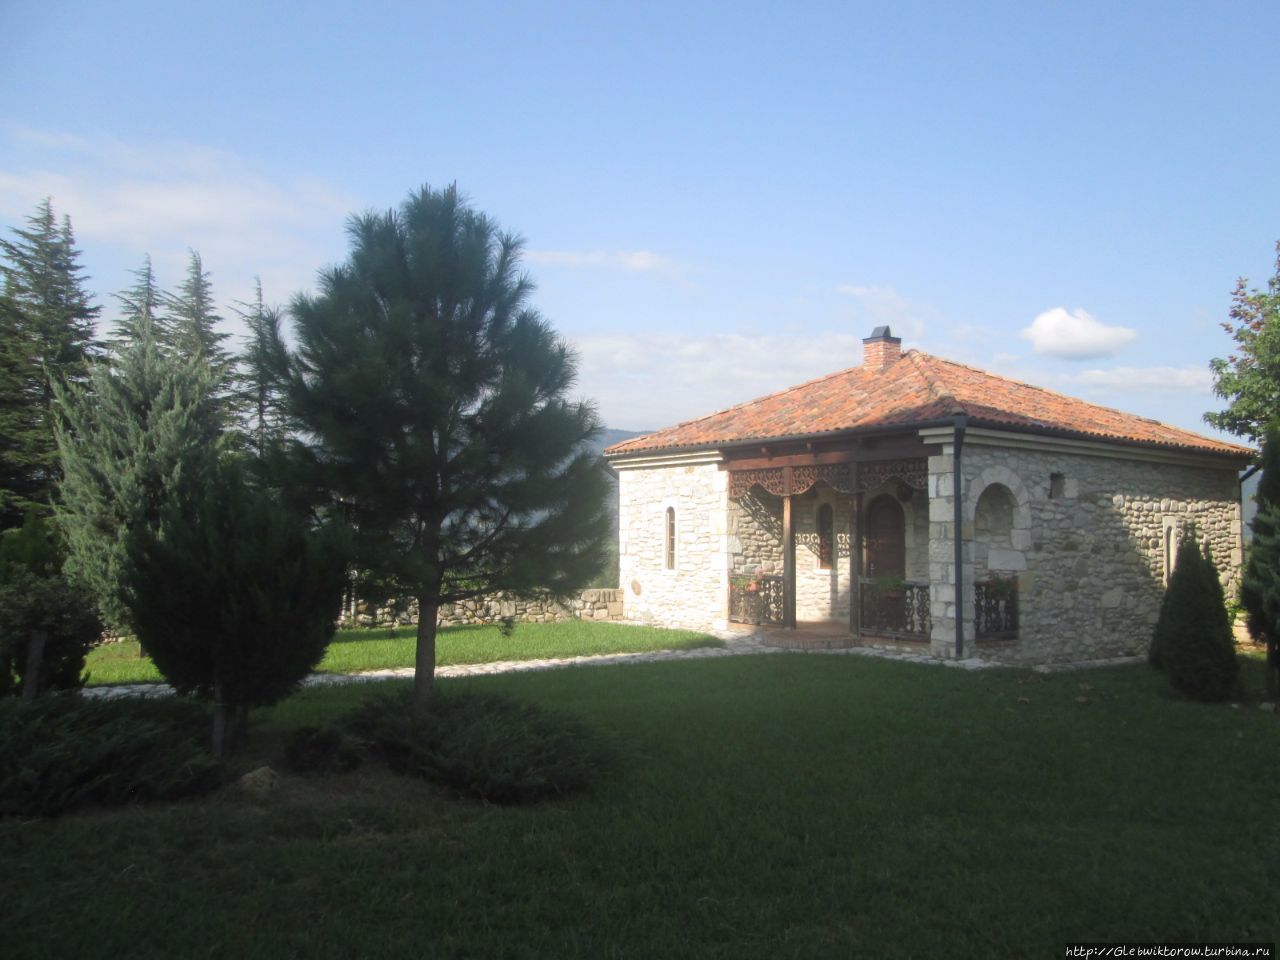 Посещение монастыря Чкондиди Мартвили, Грузия